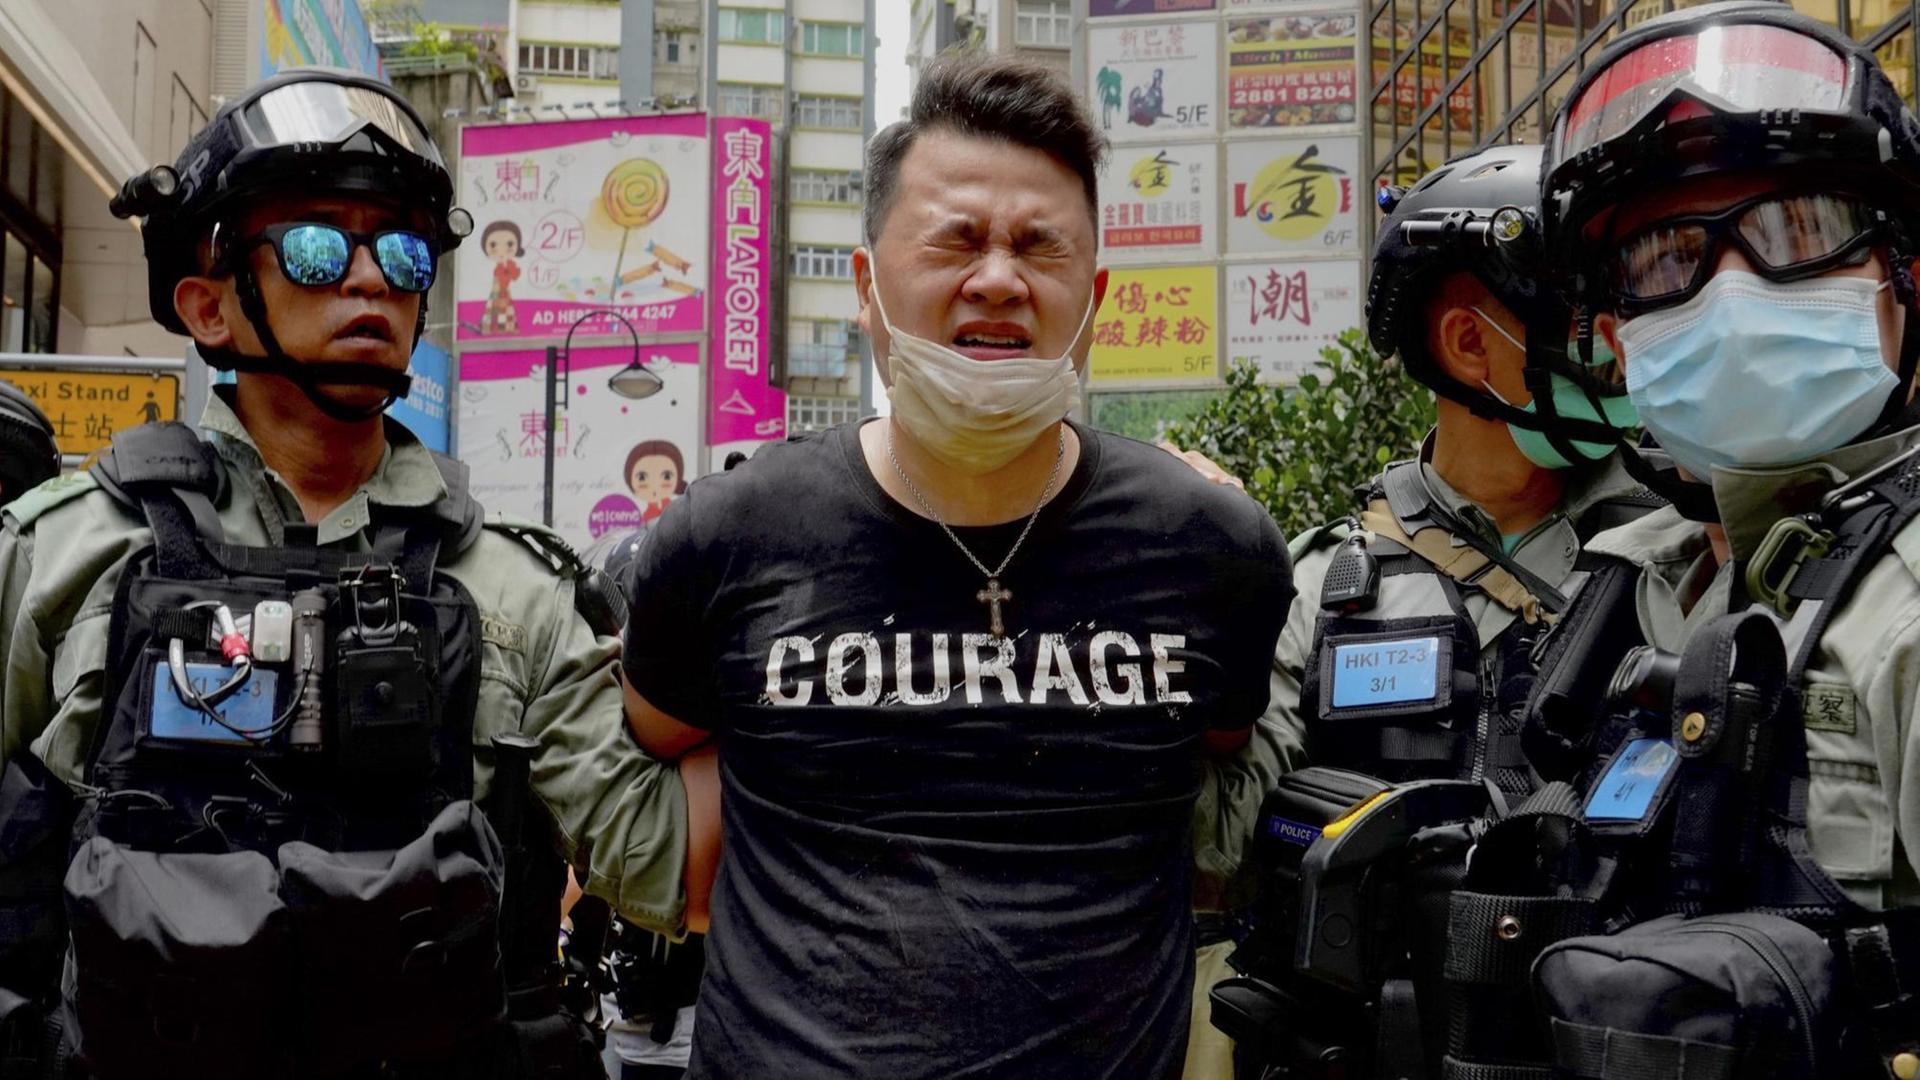 Ein Demonstrant wird in Hongkong von zwei Polizisten abgeführt. Auf dem T-Shirt des Verhafteten ist "Courage" zu lesen.